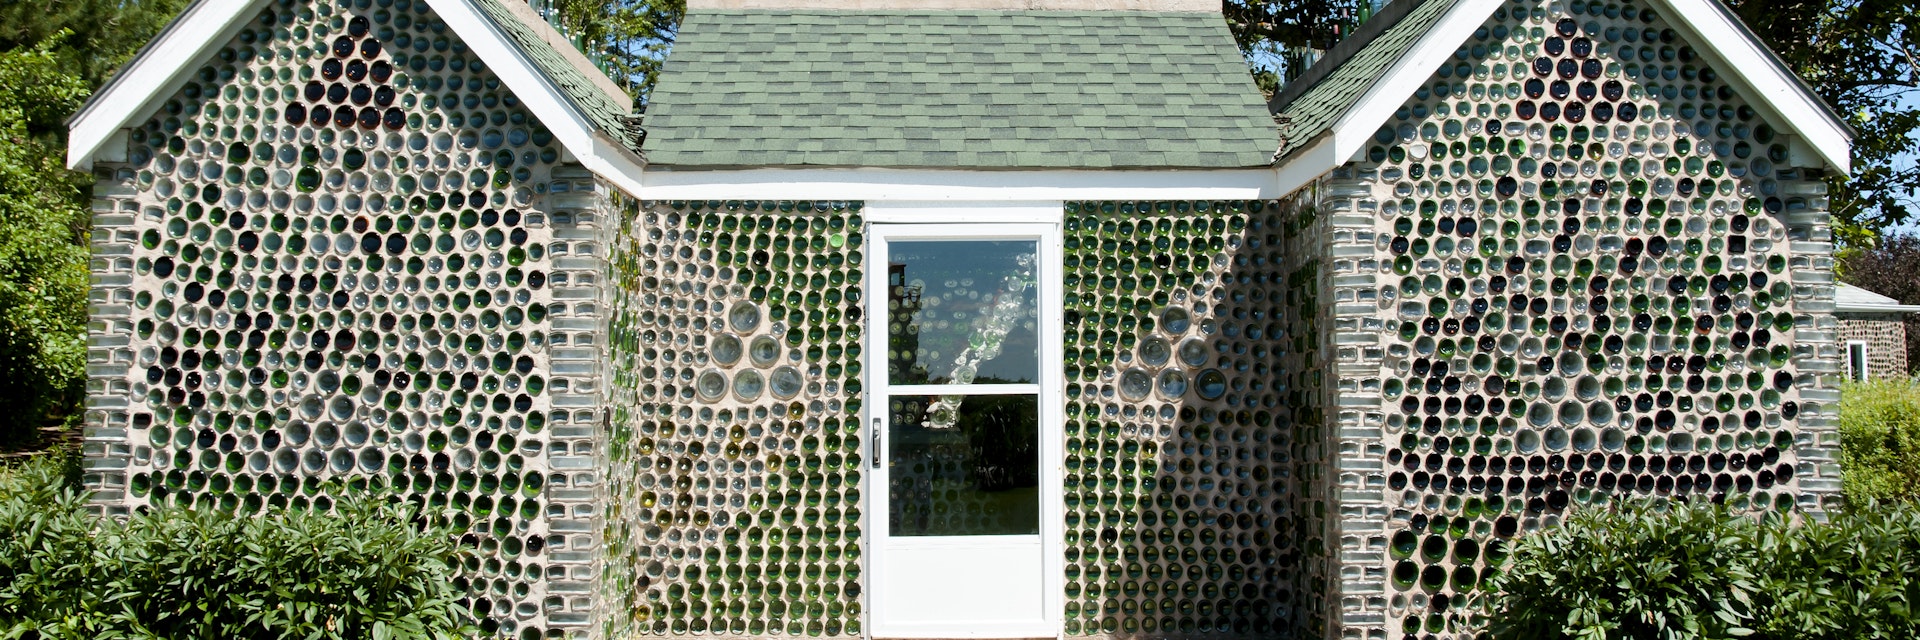 Glass Bottle House made by Edouard Arsenault on Prince Edward Island.